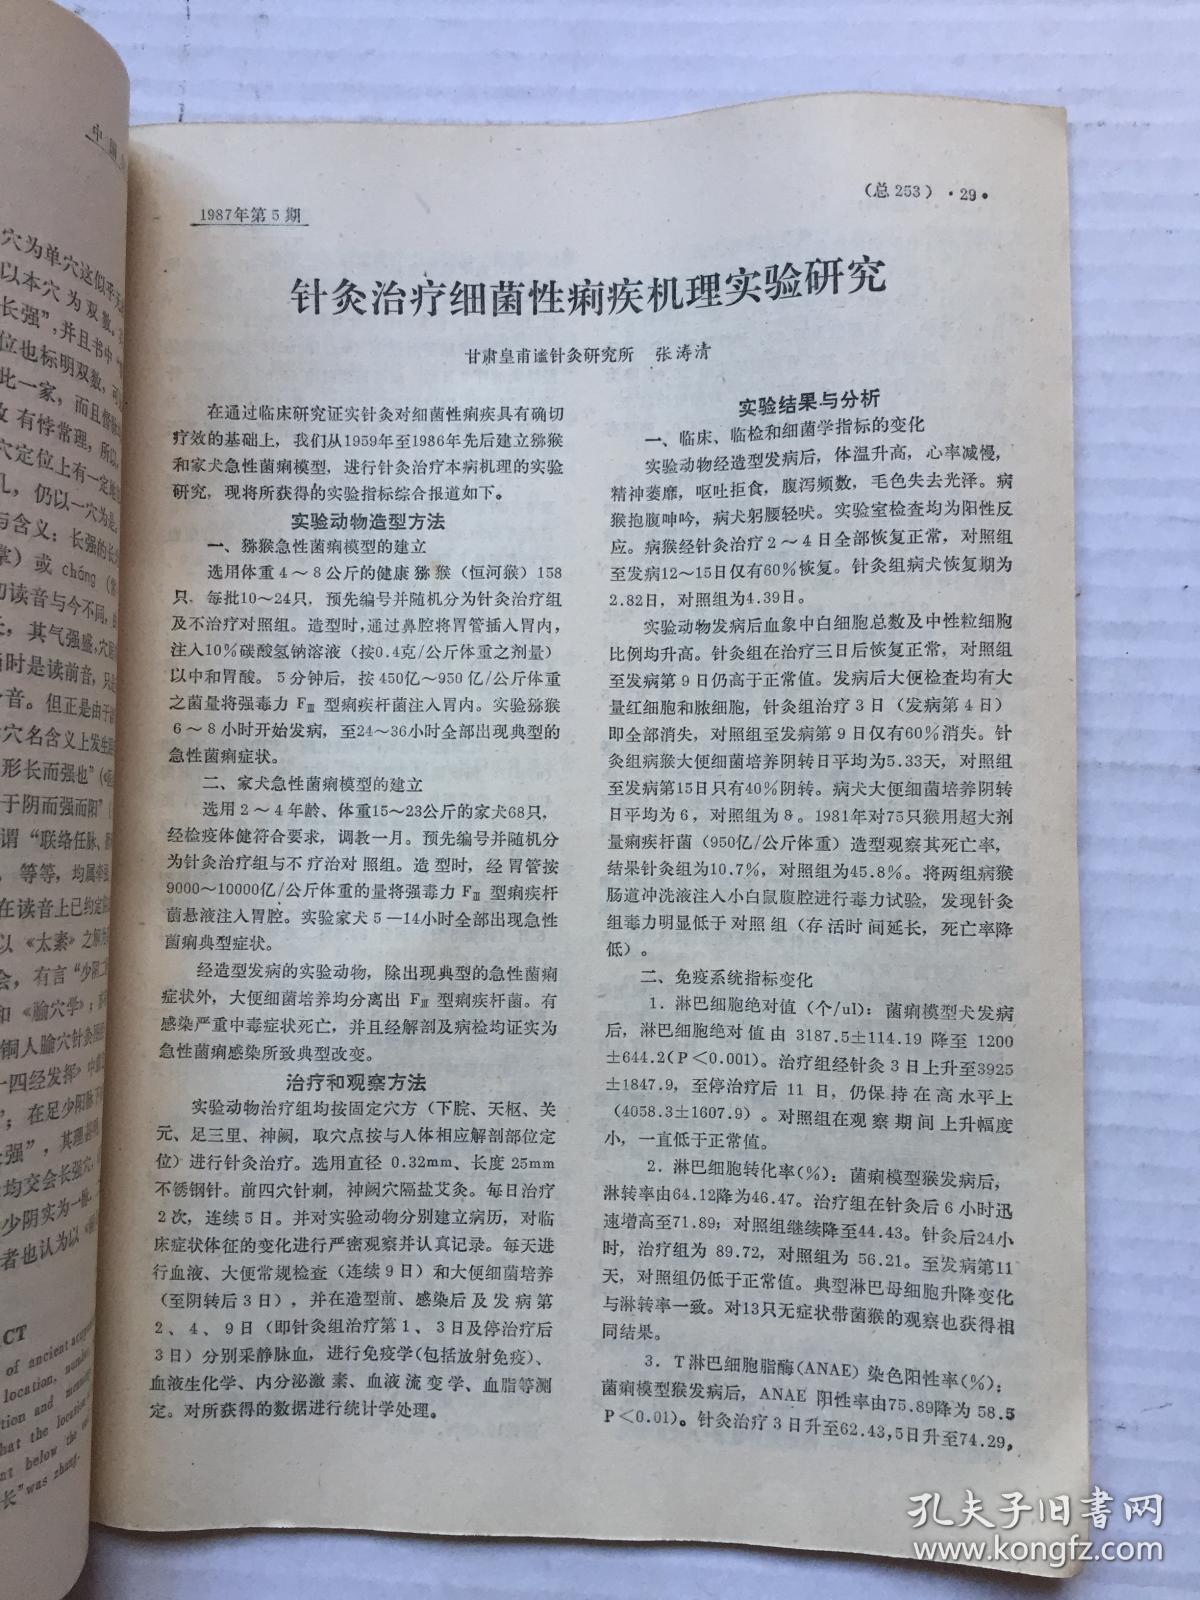 《中国针灸》1987年第5期【针灸治疗哮喘病临床研究进展等】